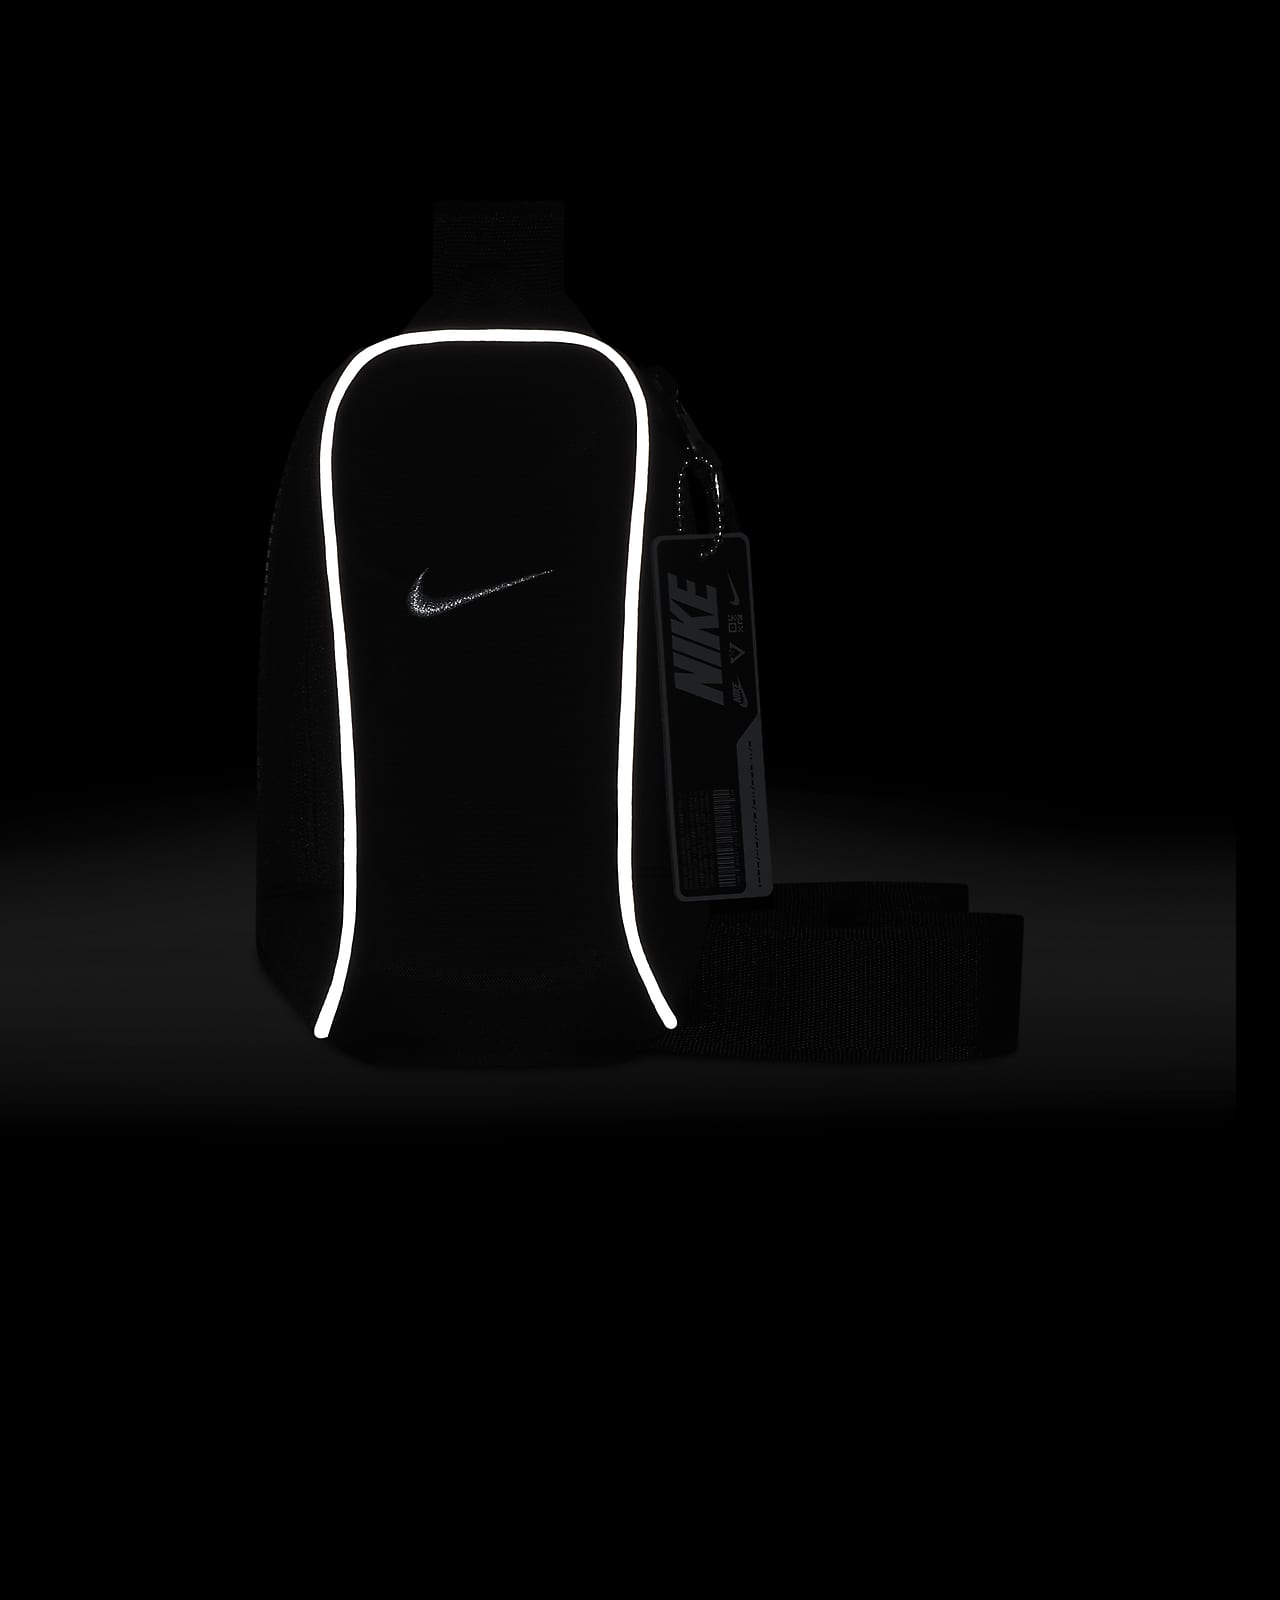 Nike Sportswear Essentials Crossbody Bag-Black